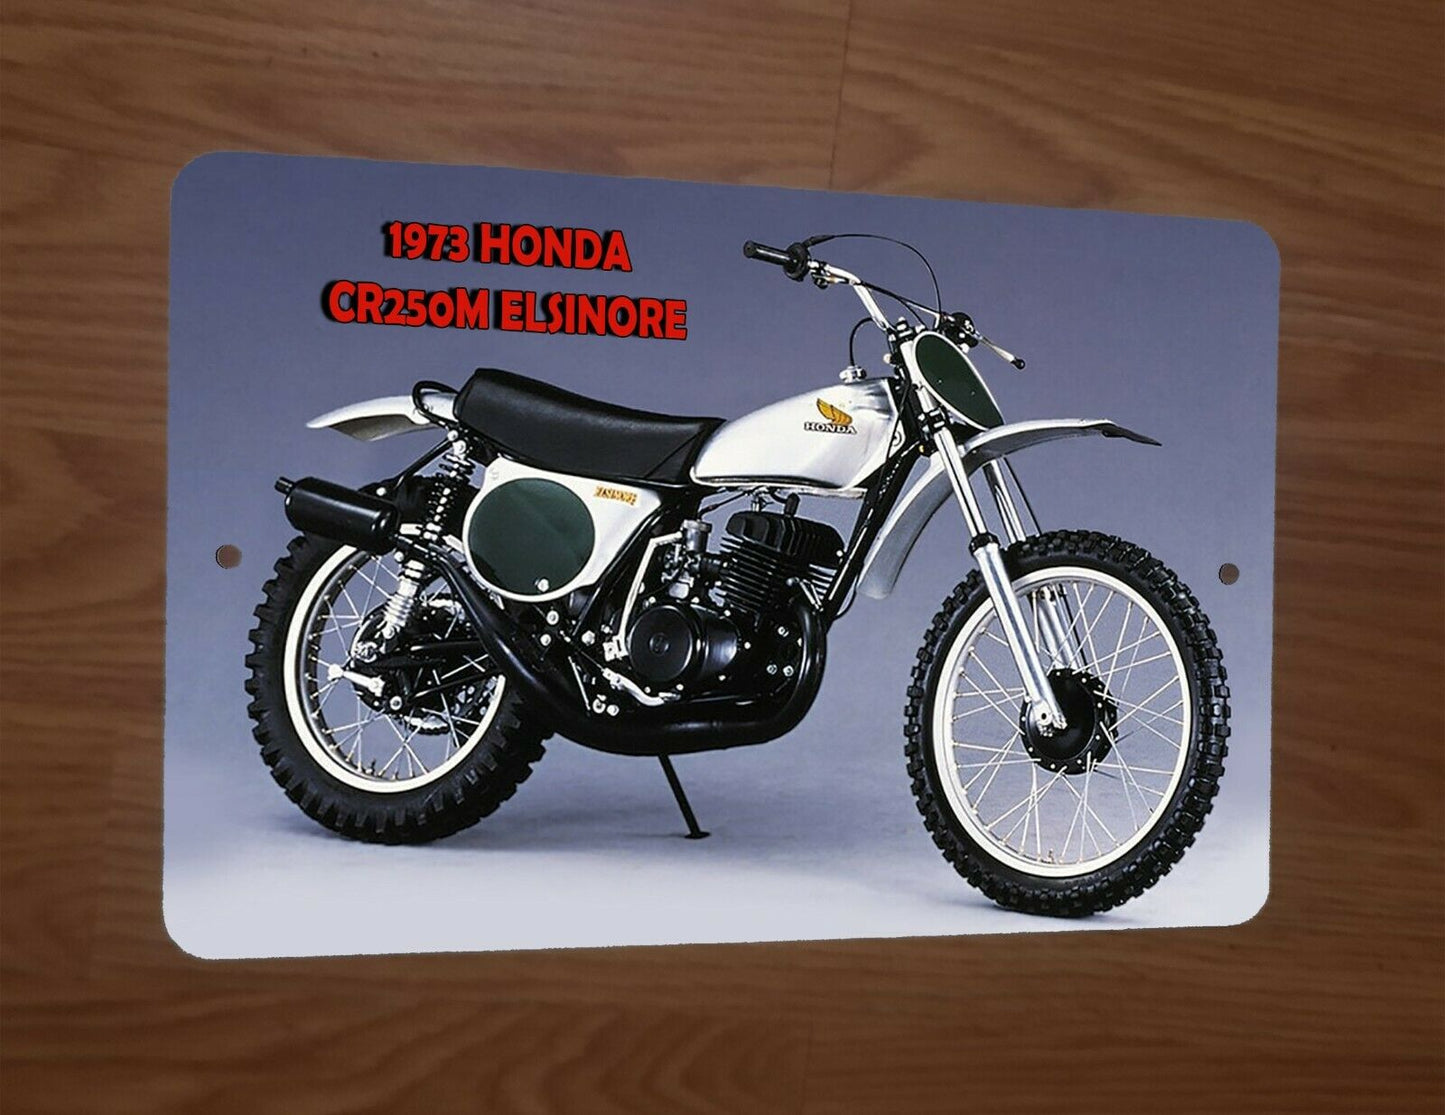 1973 Honda CR250M Elsinore Motocross Motorcycle Dirt Bike 8x12 Metal Wall Sign